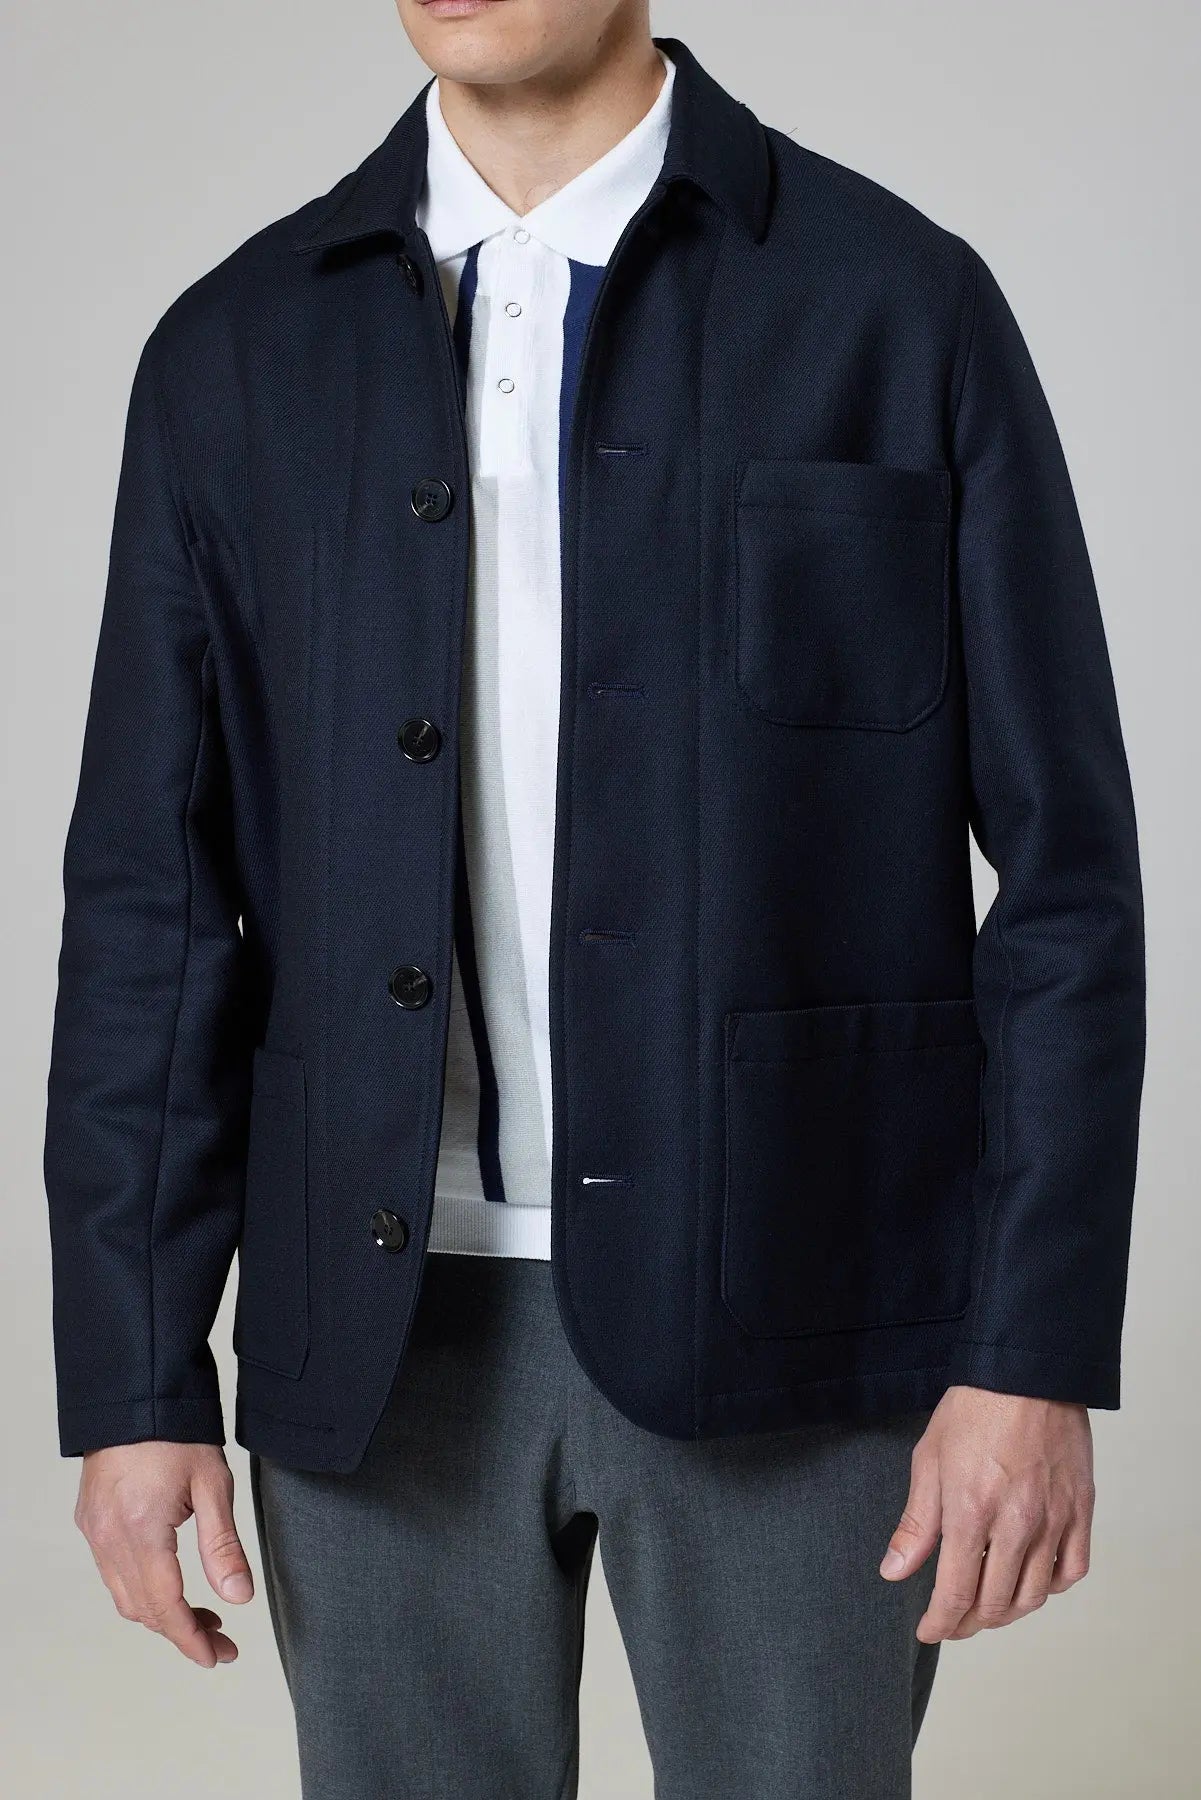 Billingham Jacket - Dark Navy Twill - Wear London